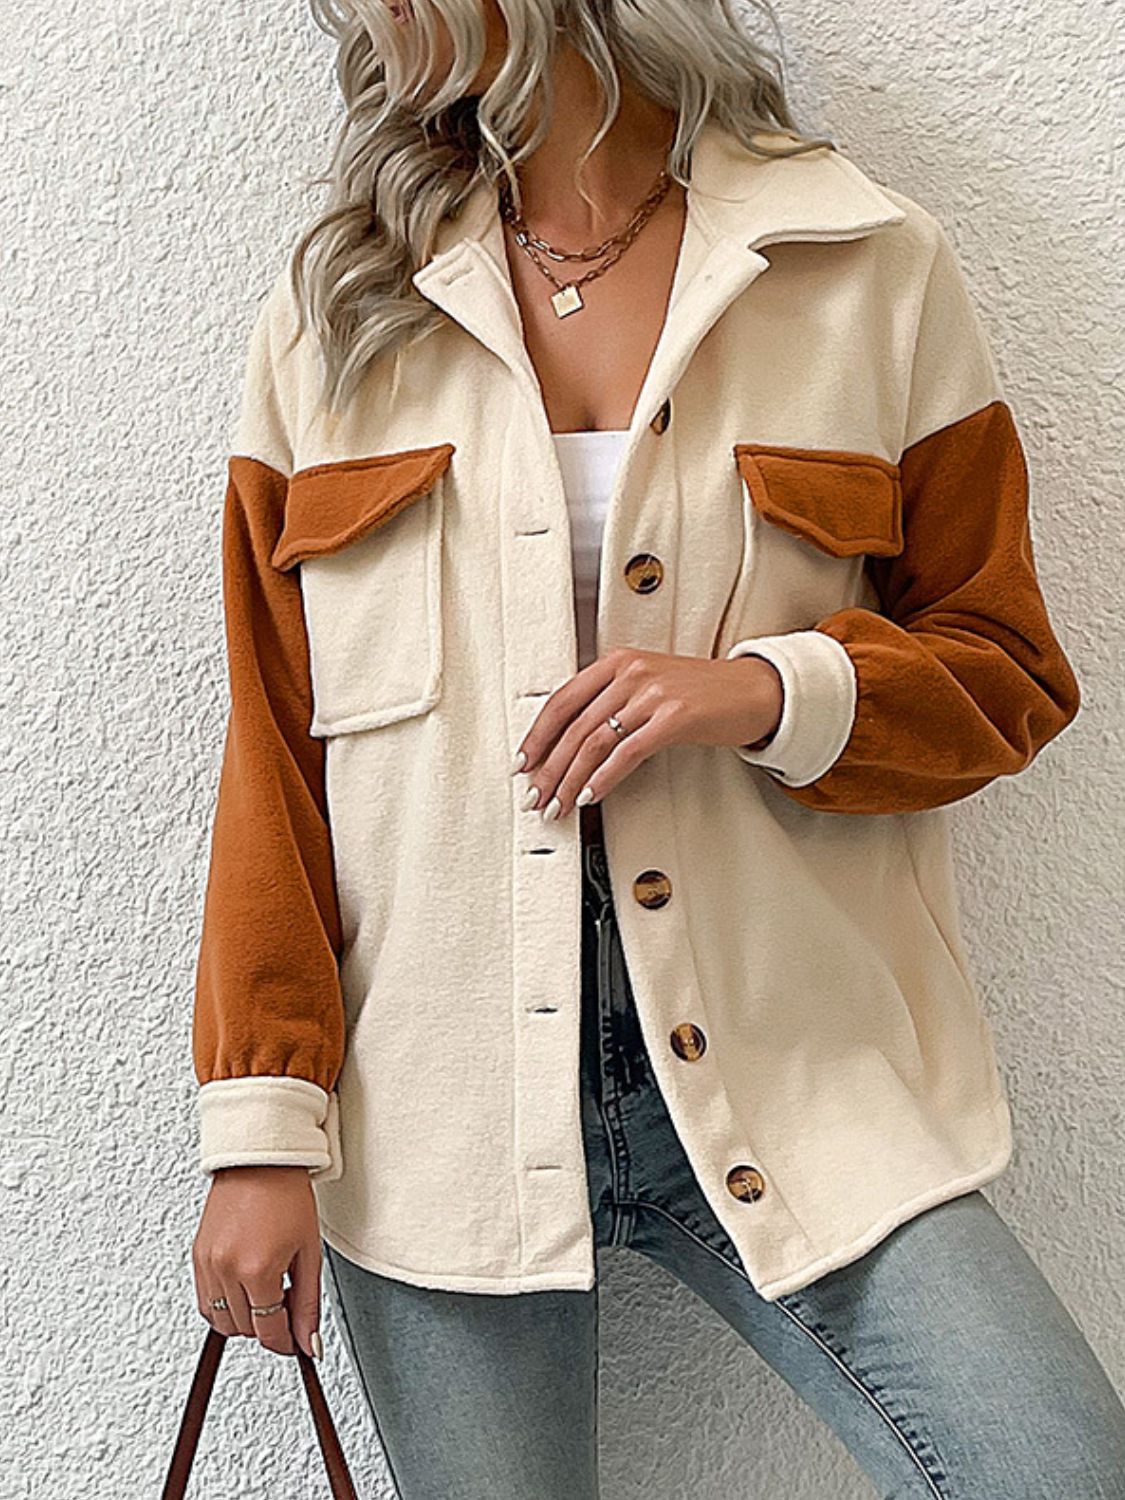 Contrast Button-Up Fleece Jacket - Beige/Brown / S Girl Code